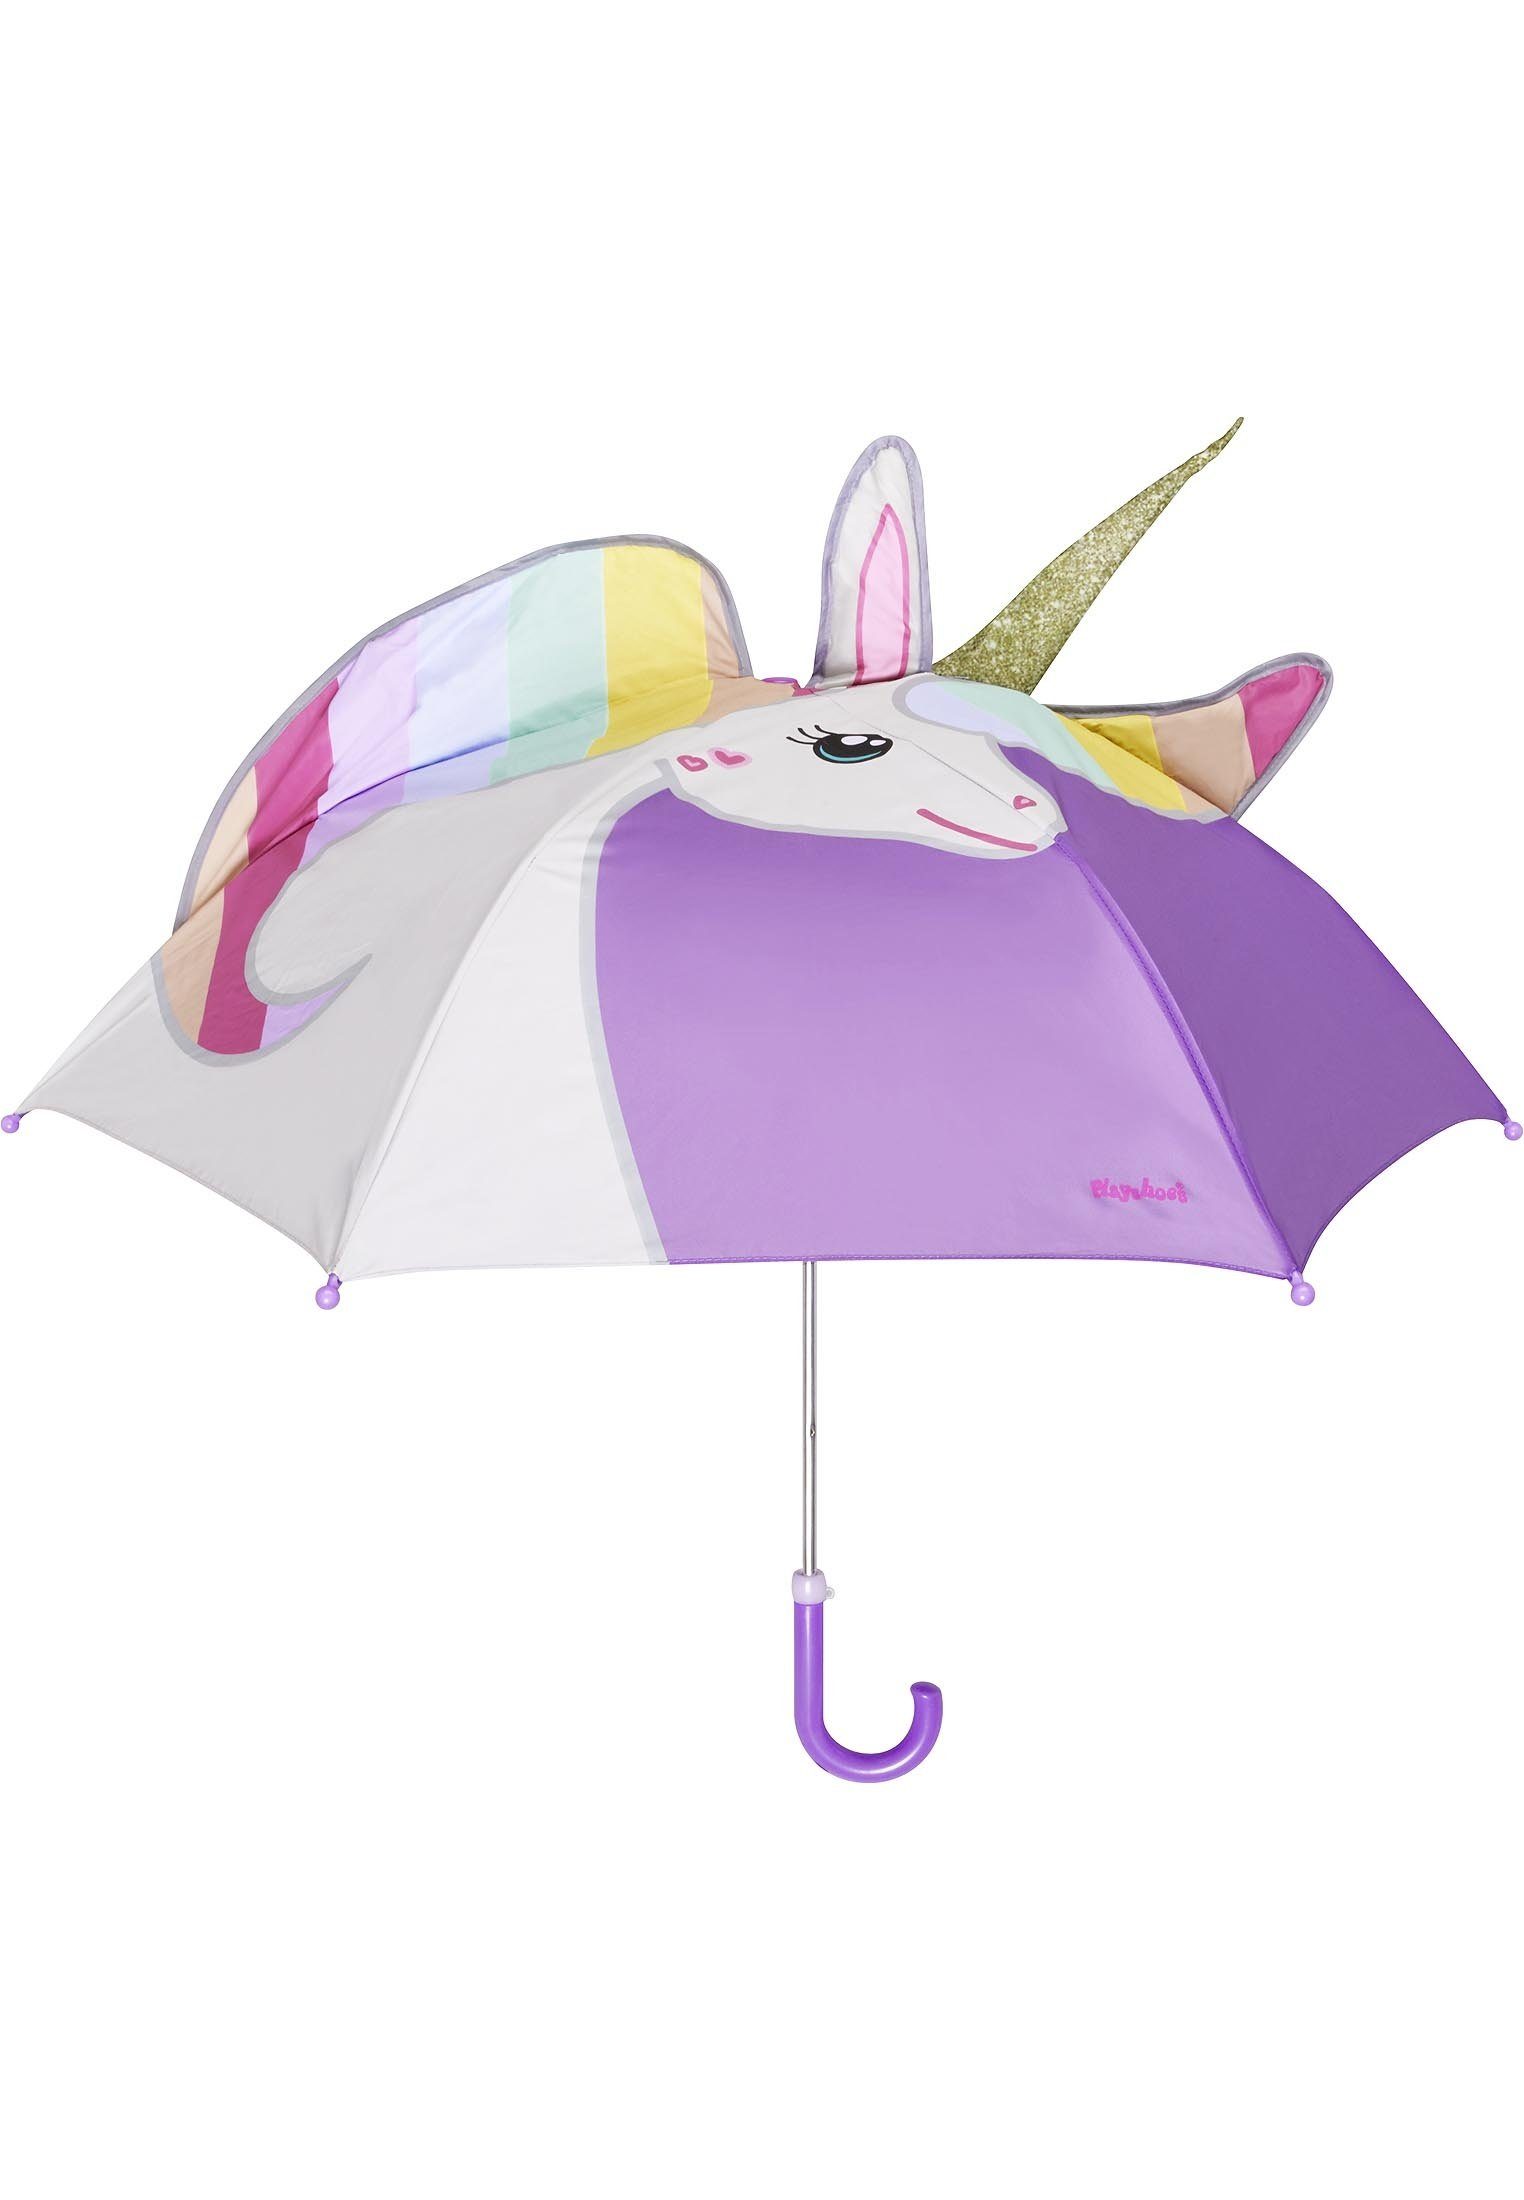 [Versandgebühr 0 Yen] Playshoes Stockregenschirm Einhorn Regenschirm